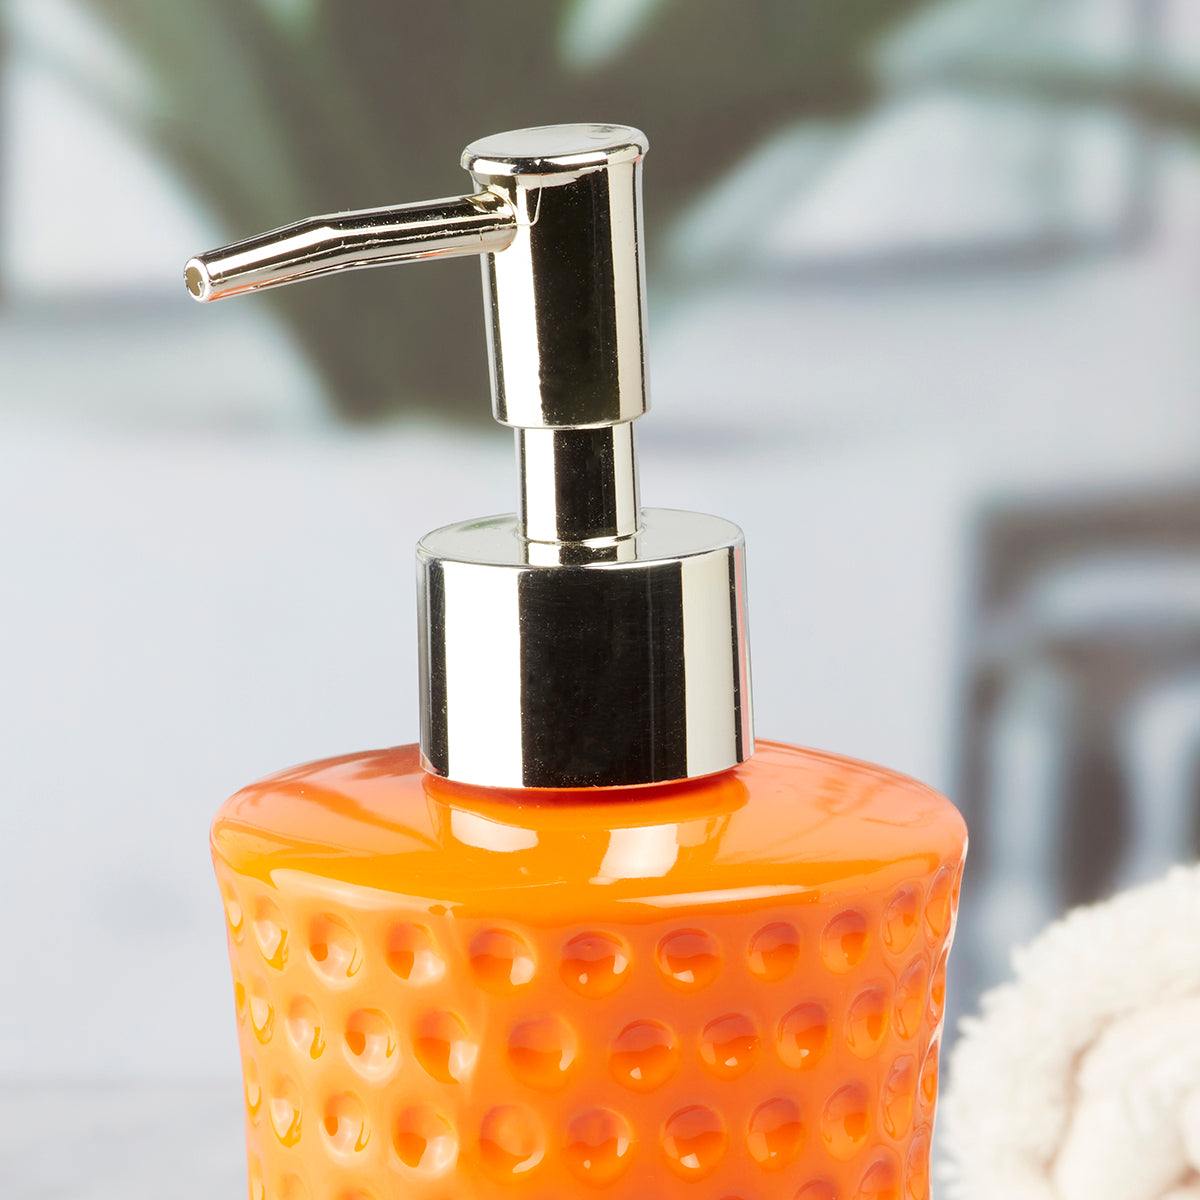 Ceramic Soap Dispenser handwash Pump for Bathroom, Set of 1, Orange (8043)